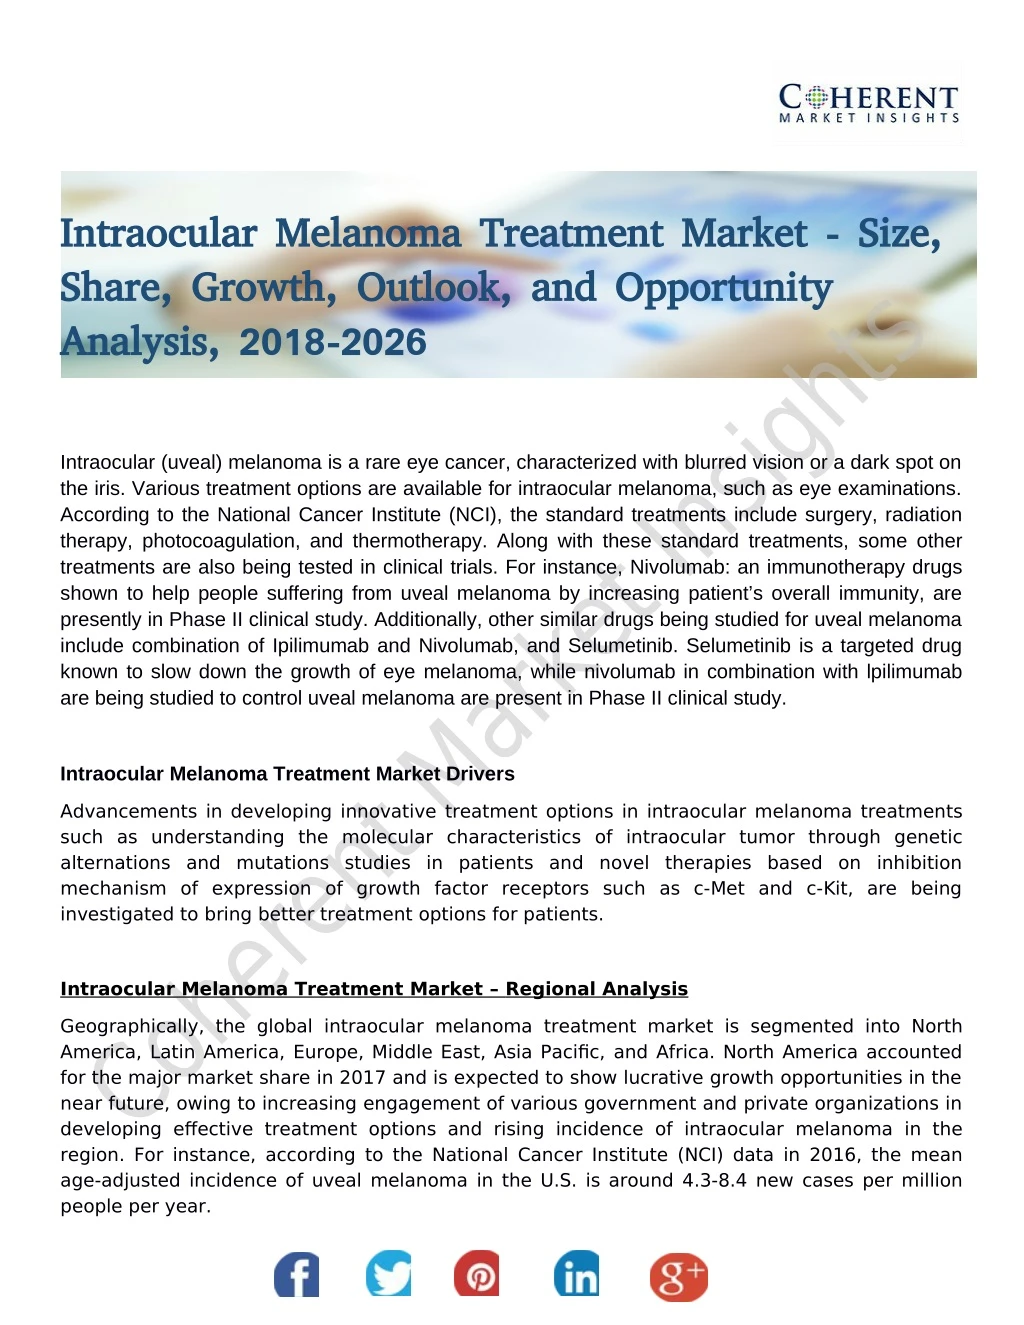 intraocular melanoma treatment market size